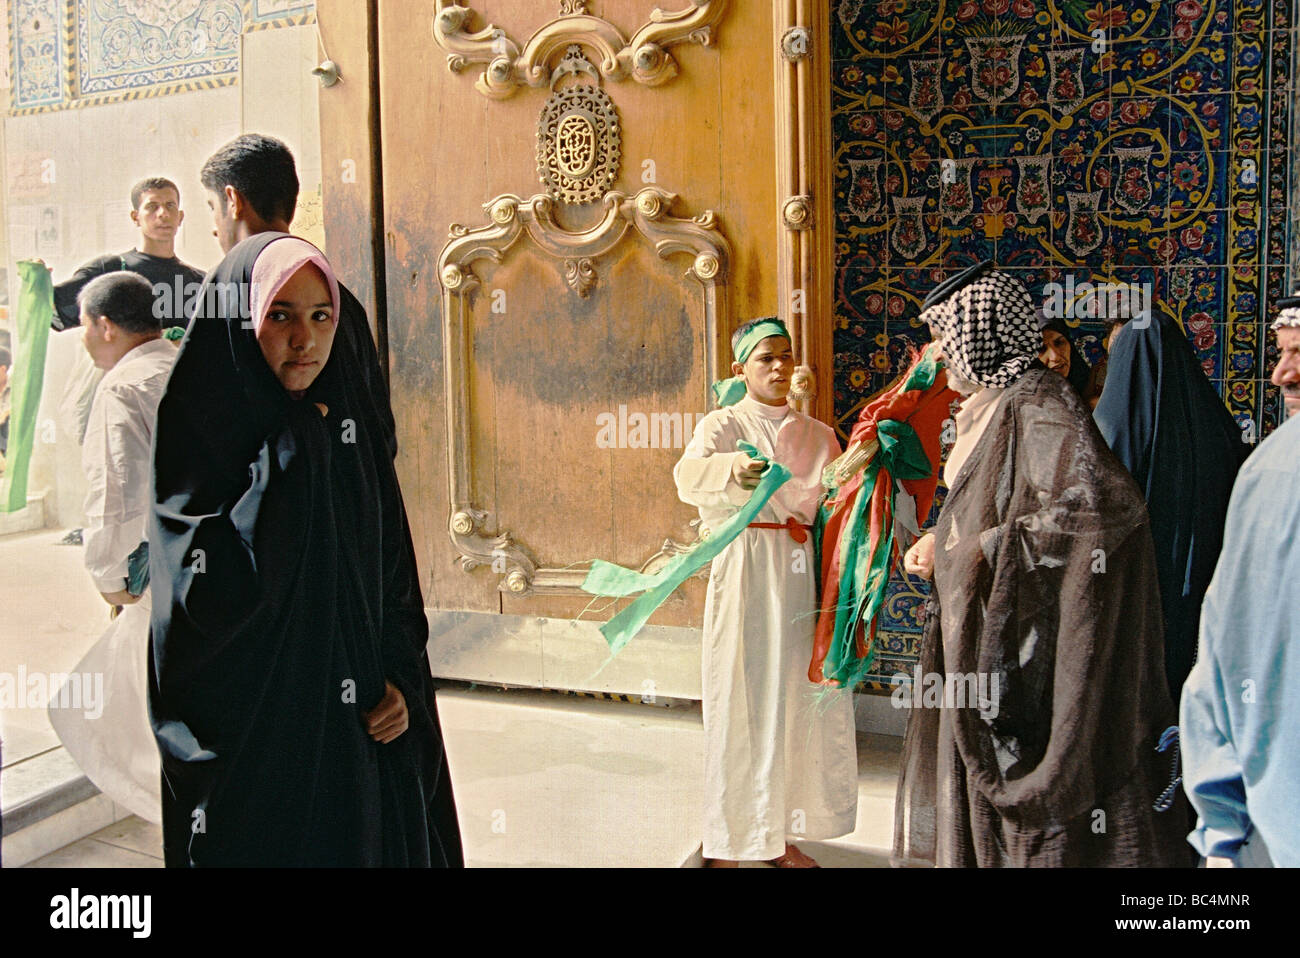 Les fidèles à l'une des portes de la mosquée de l'imam Husayn et de culte au cours de la période d'Ashura, sainte de Kerbala, en Irak. Banque D'Images